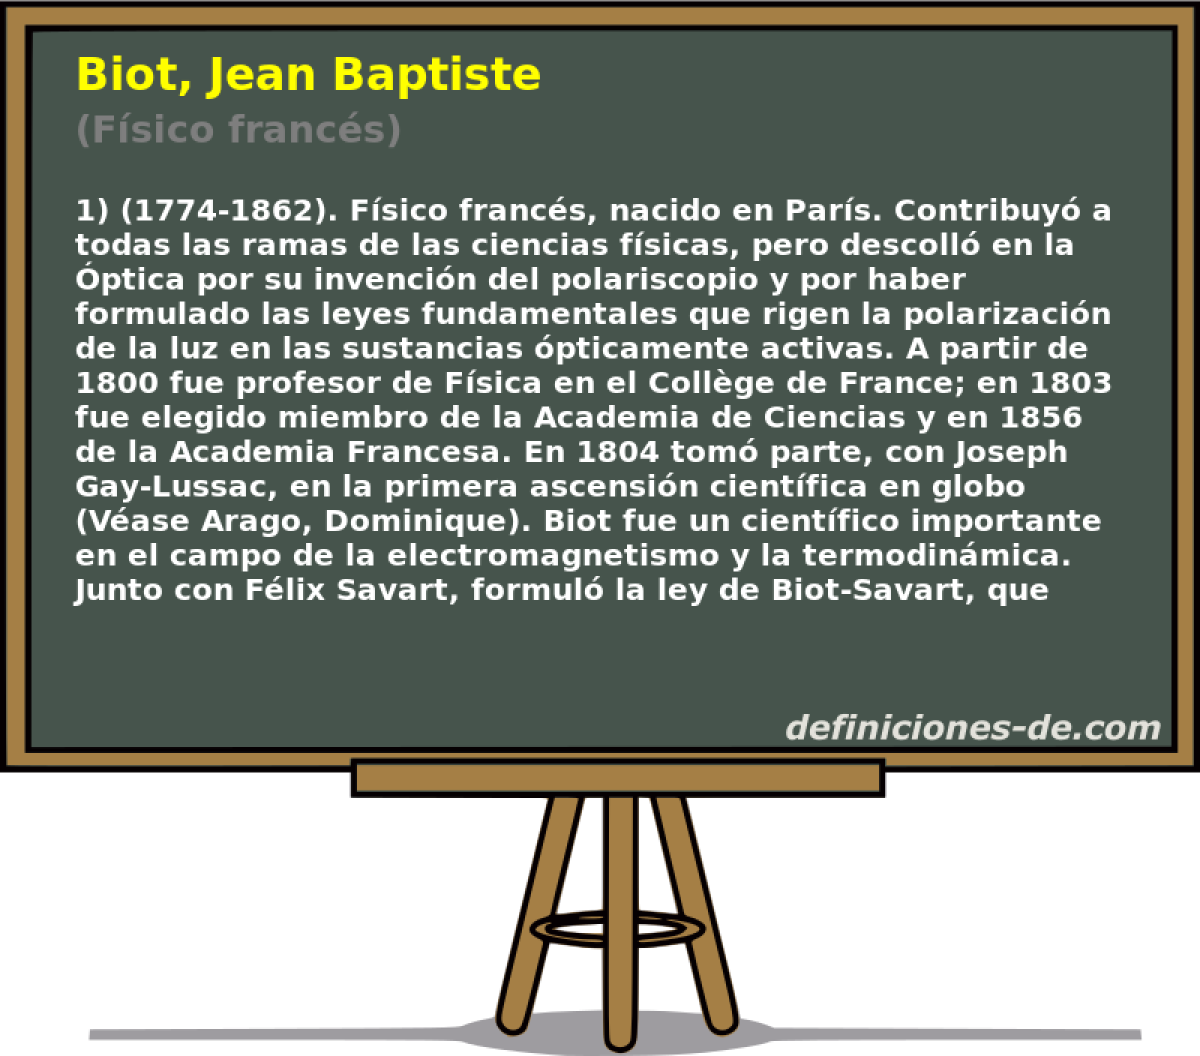 Biot, Jean Baptiste (Fsico francs)